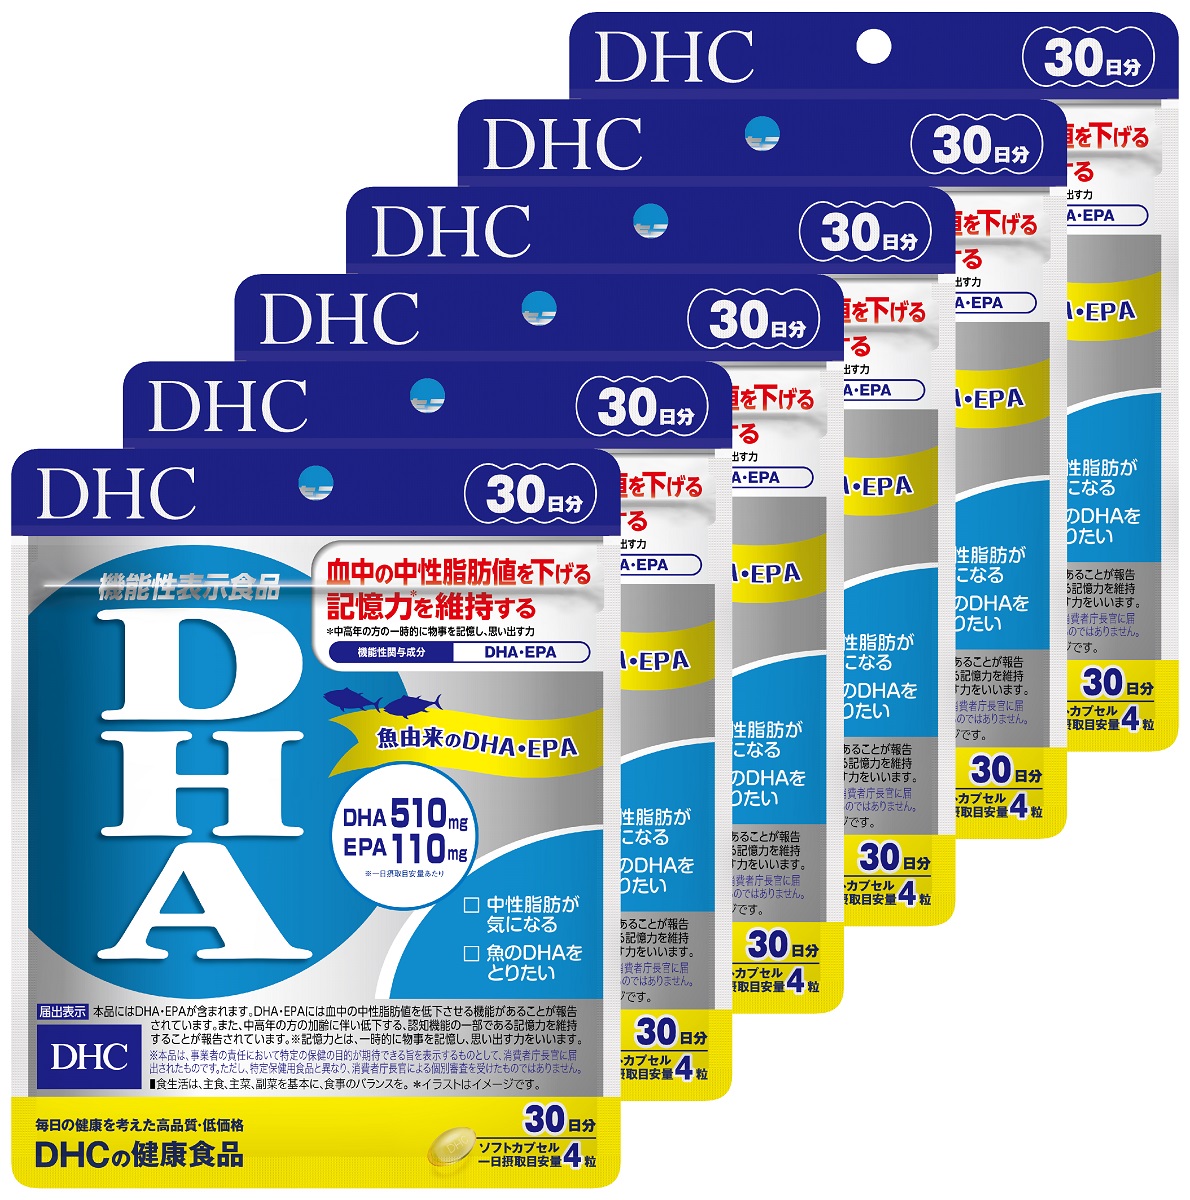 血中の中性脂肪値を低下させる 魚由来のDHA EPA配合のサプリメントです ふるさと納税 DHC 6ヶ月分セット 30日分 DHA お買い得 機能性表示食品 サプリメント 激安通販ショッピング